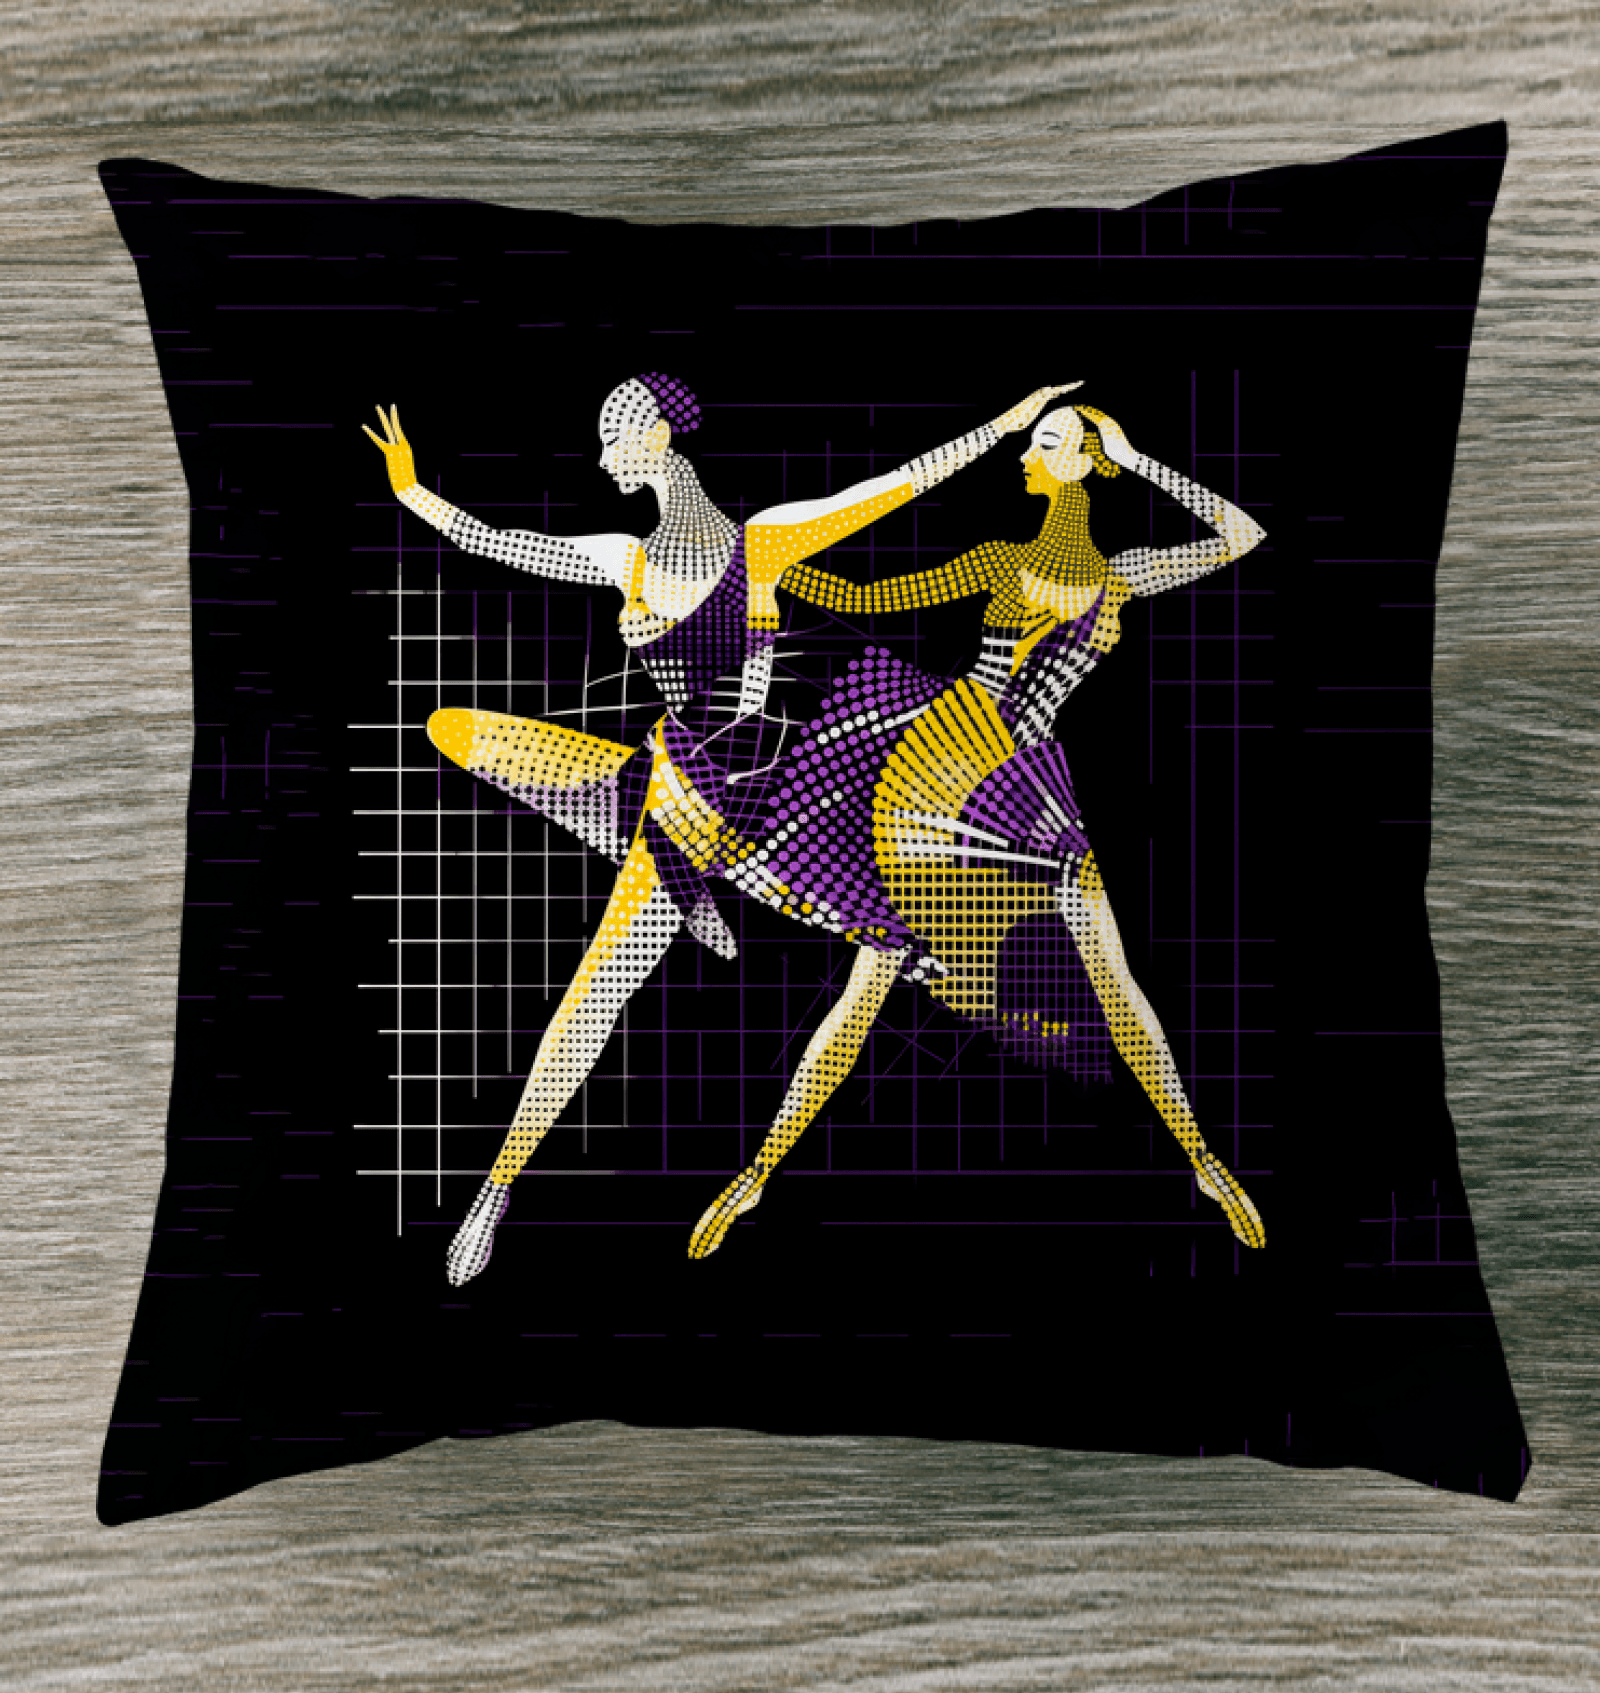 Dazzling Feminine Dance Form Outdoor Pillow - Beyond T-shirts